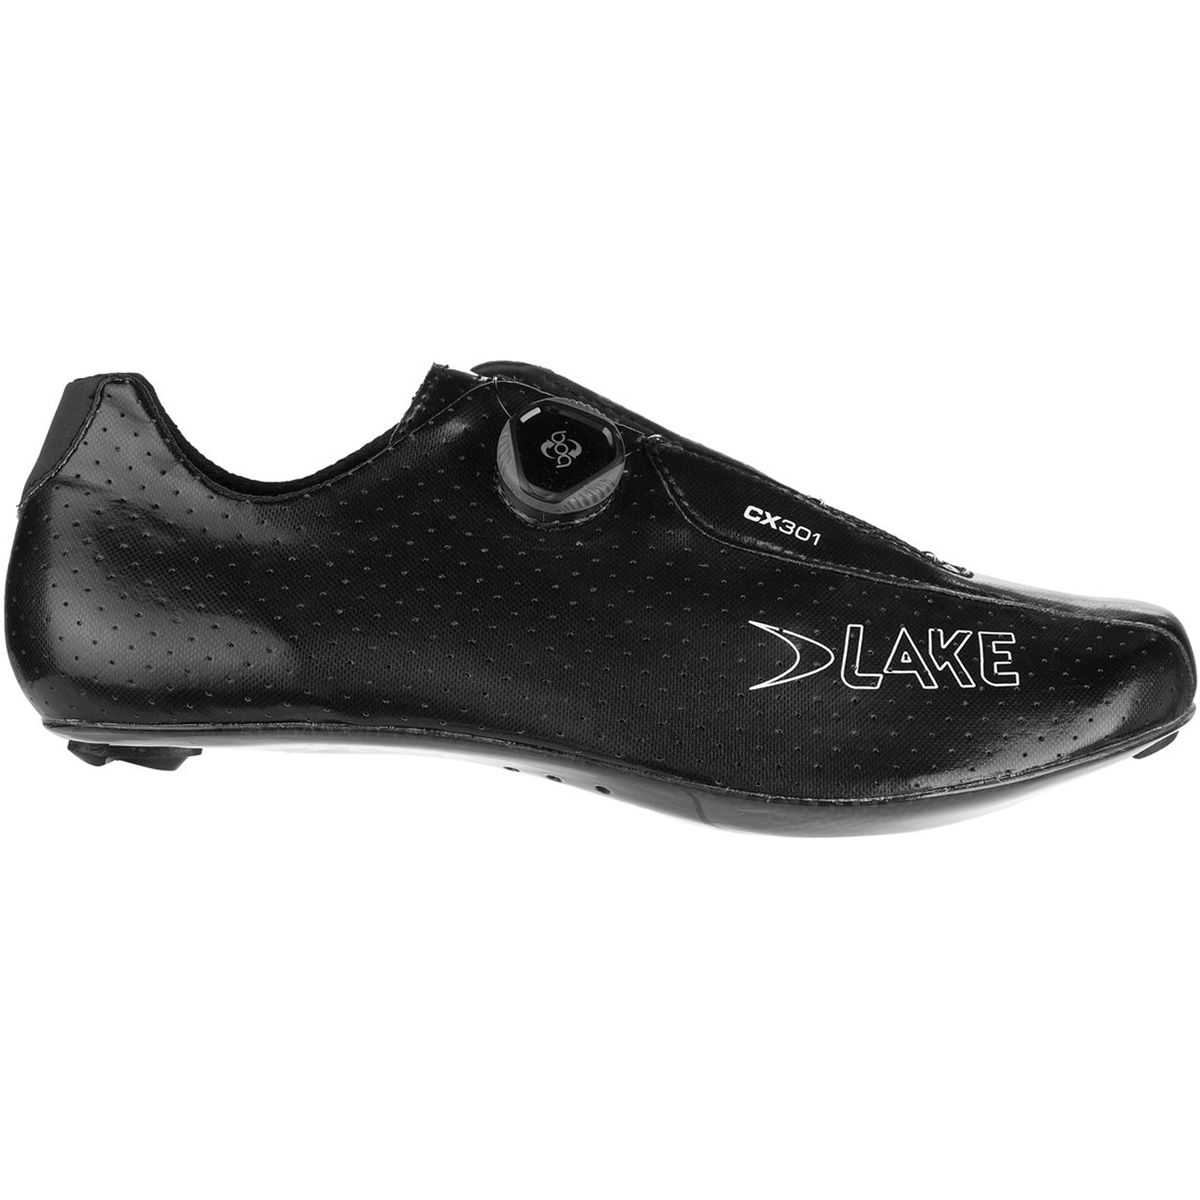 Lake CX301 Wide Cycling Shoe - Men's